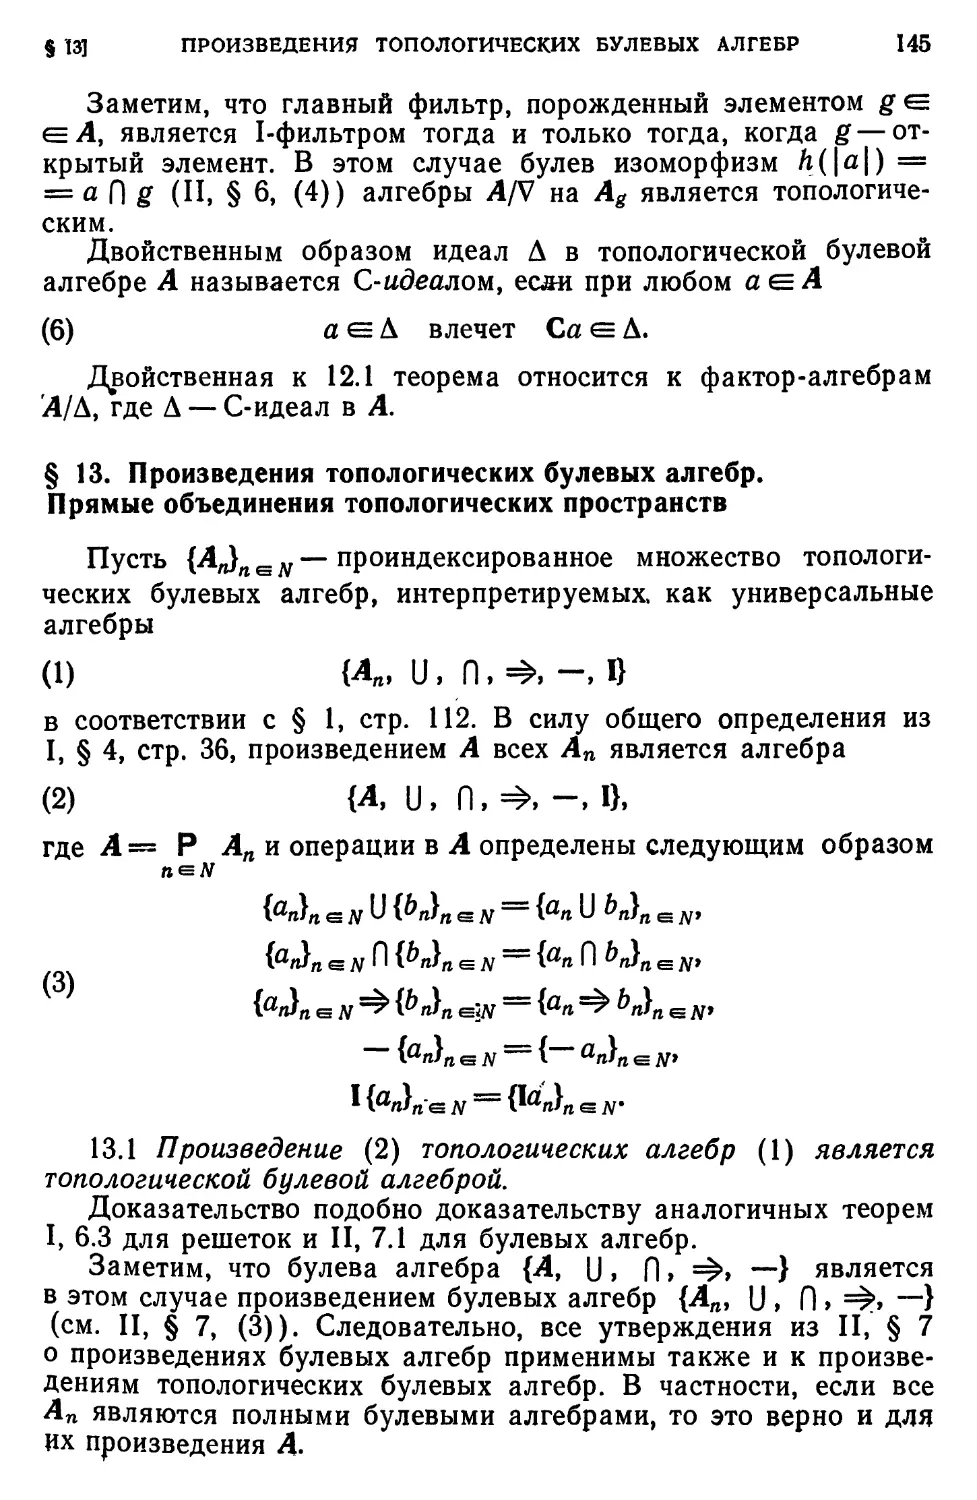 § 13. Произведения топологических булевых алгебр. Прямые объединения топологических пространств